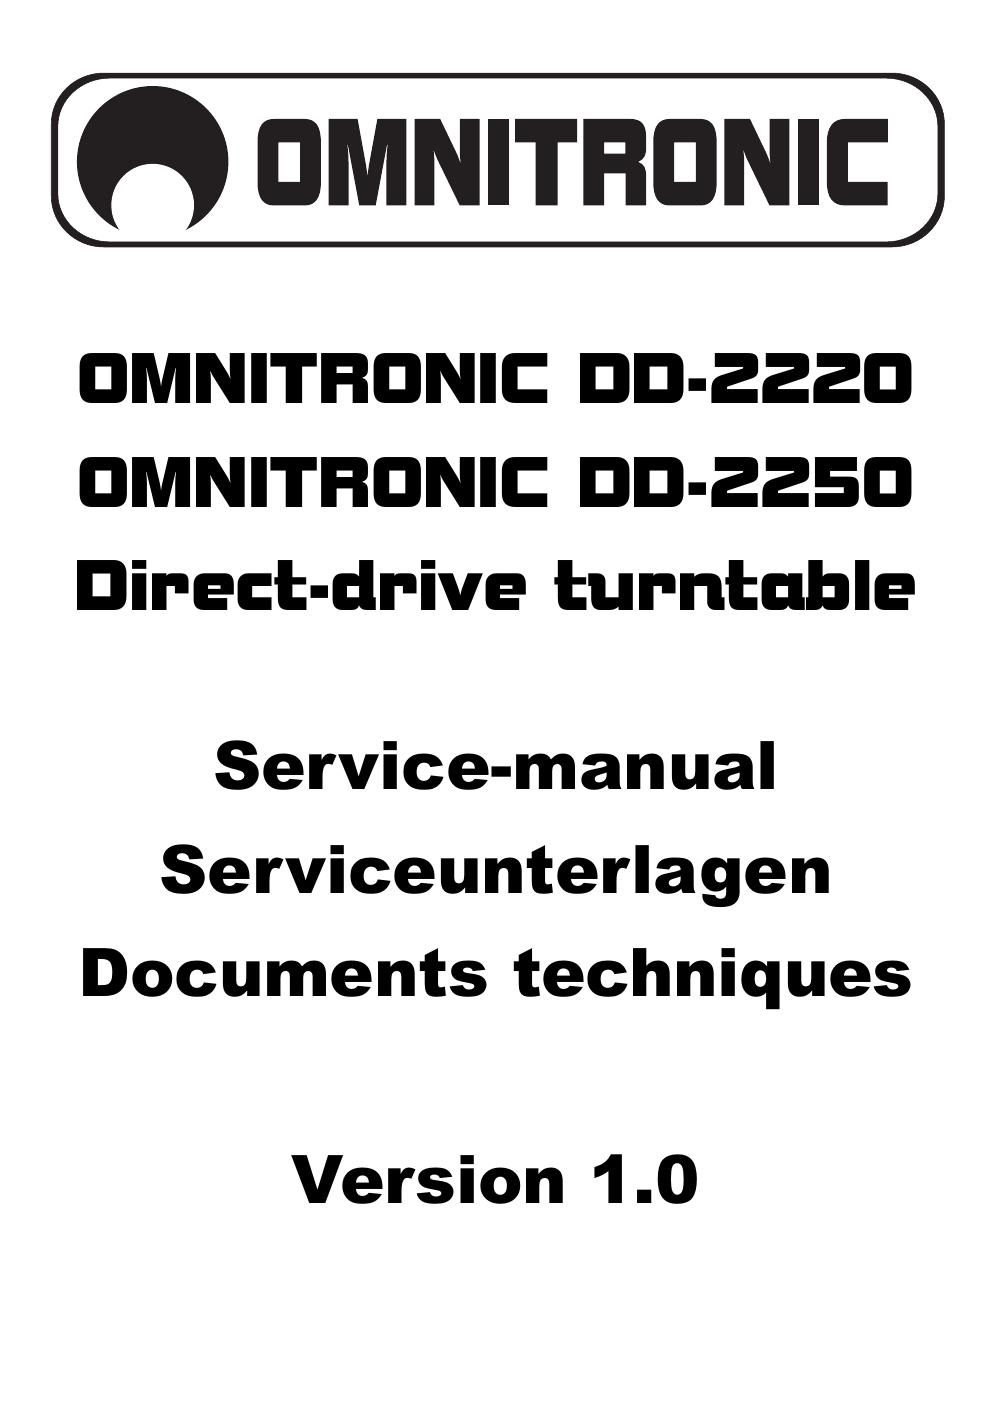 omnitronic dd 2220 dd 2250 service manual